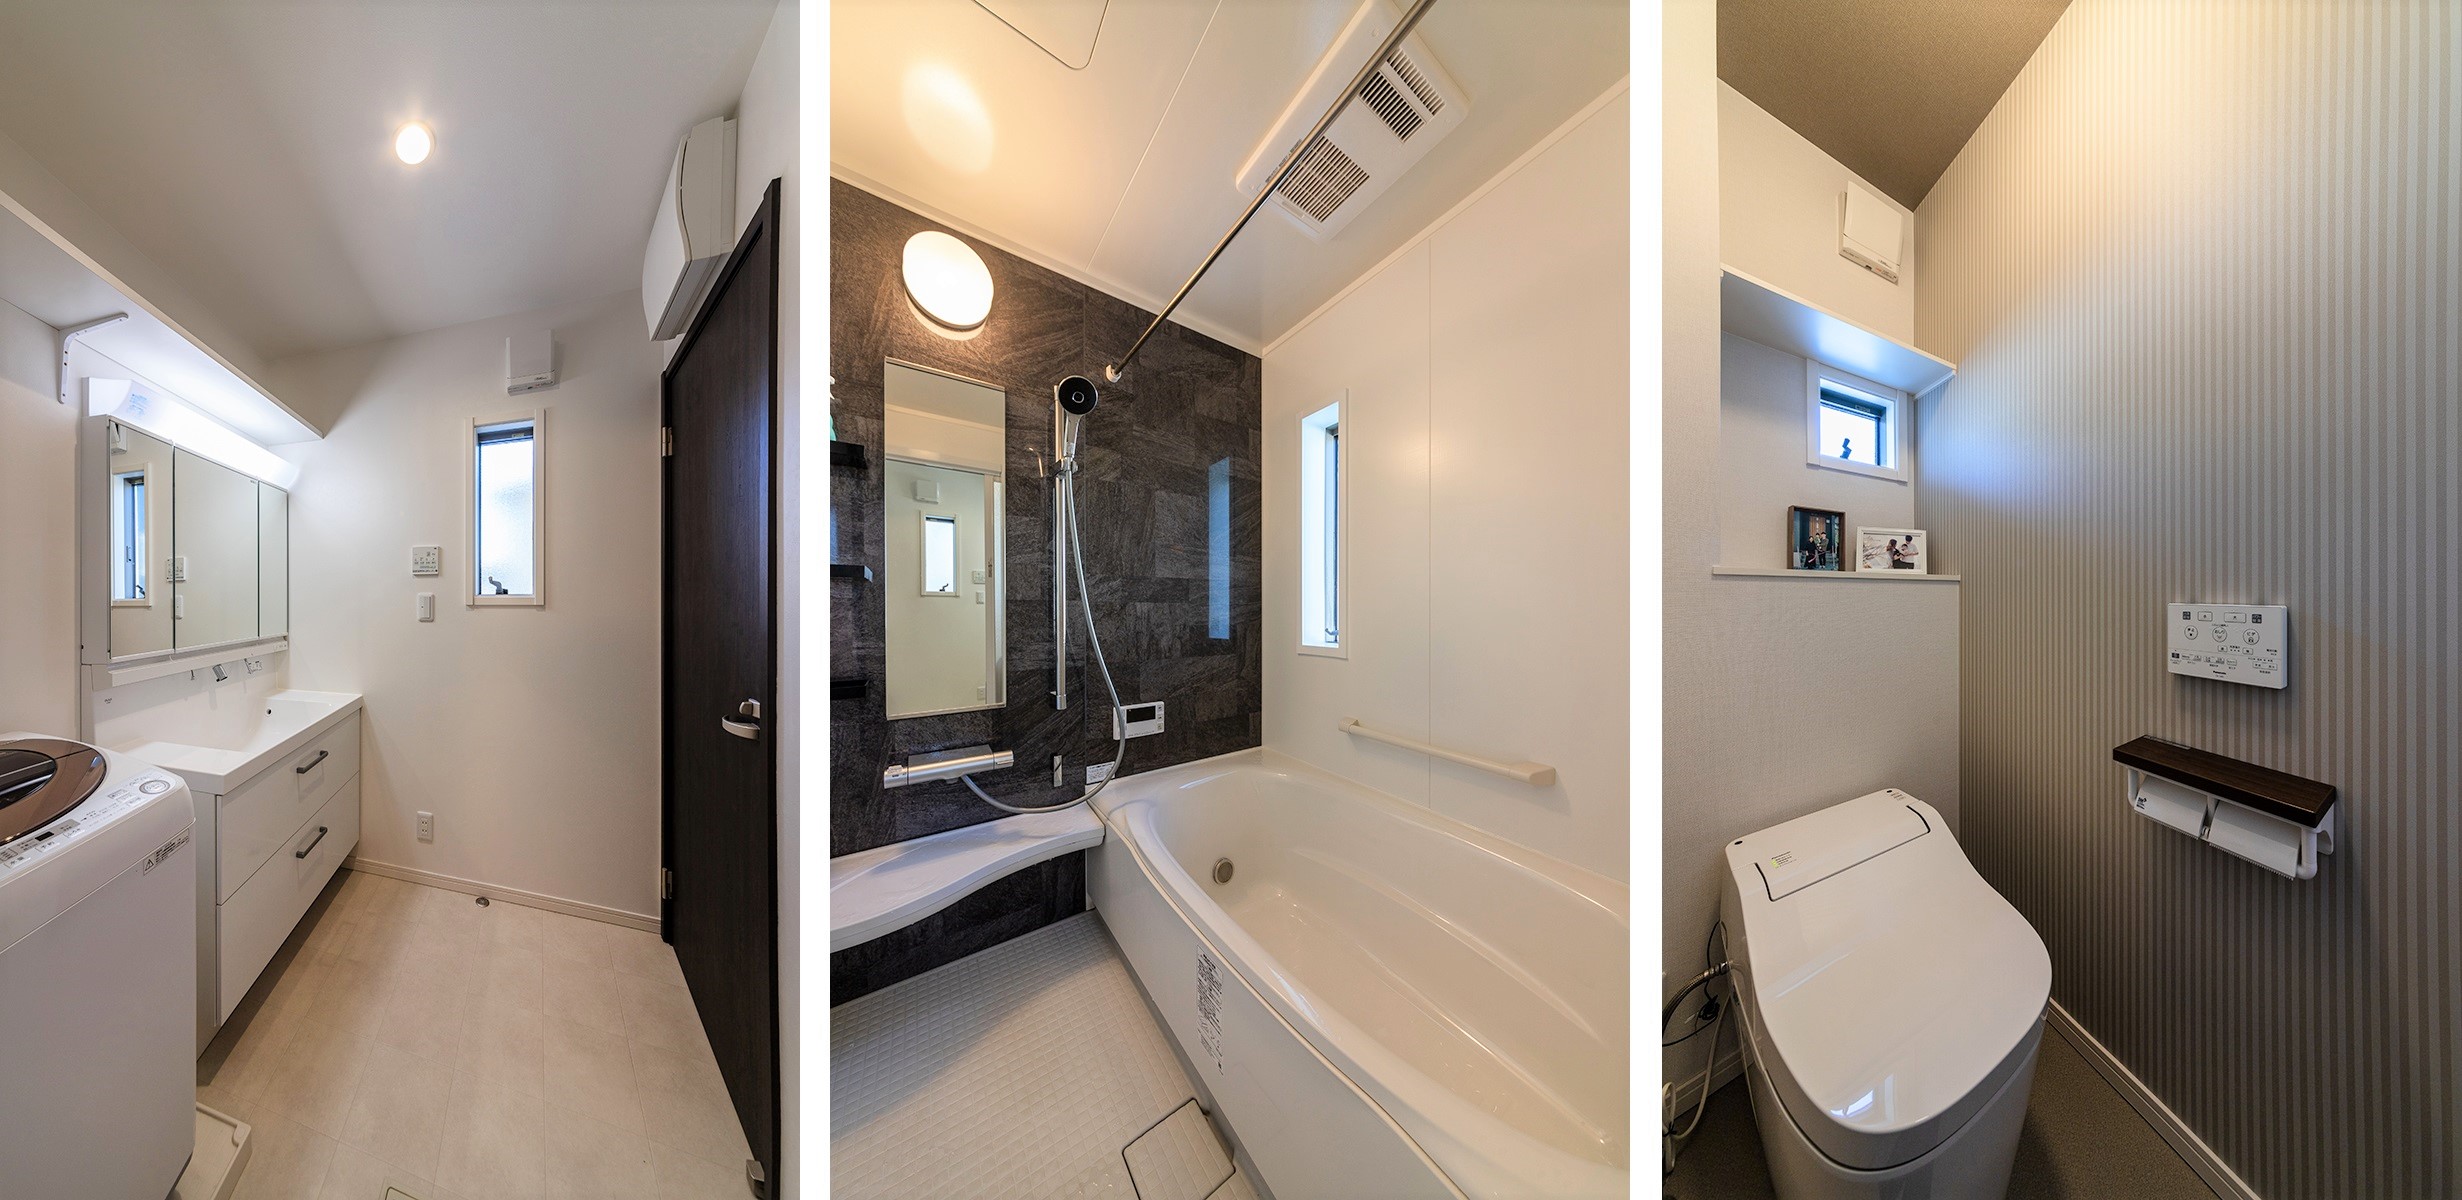 水回りはモノトーン調で統一し、大人モダンな印象に。<br />
広々とした洗面室はシンプルで使い勝手抜群です。トイレのストライプの壁紙もオシャレですね。